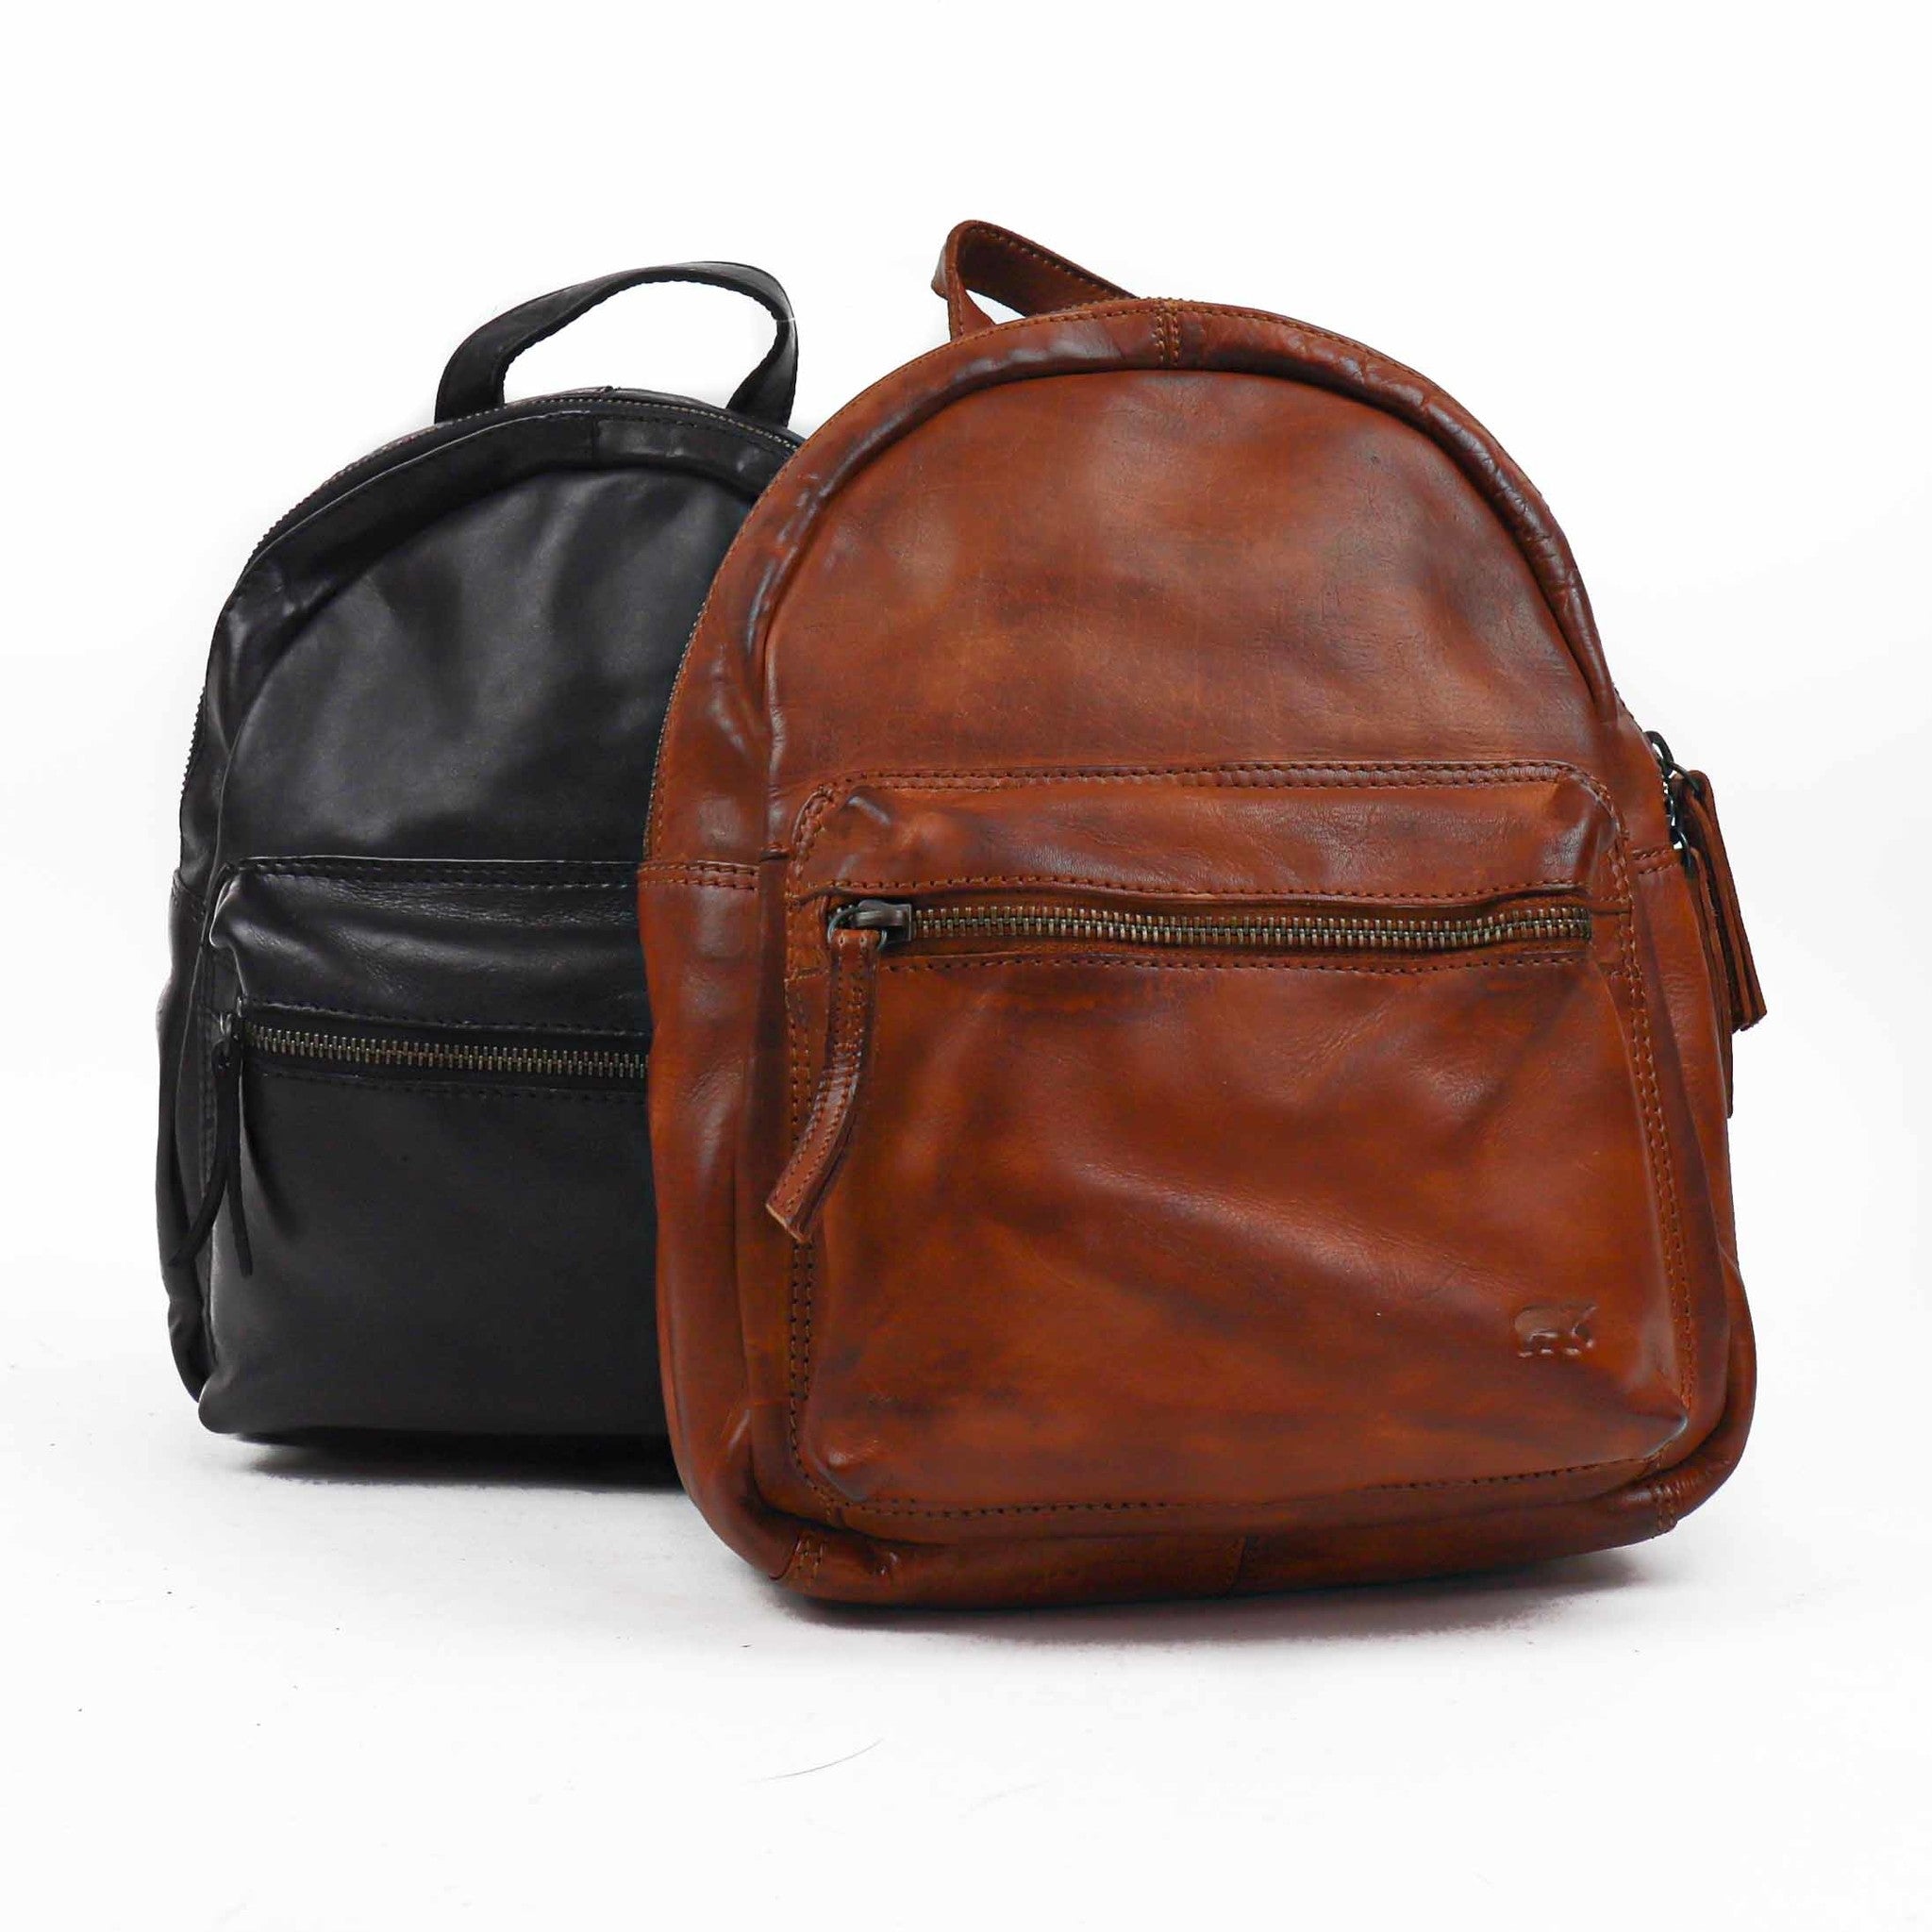 Backpack 'Nora' black - CL 40706